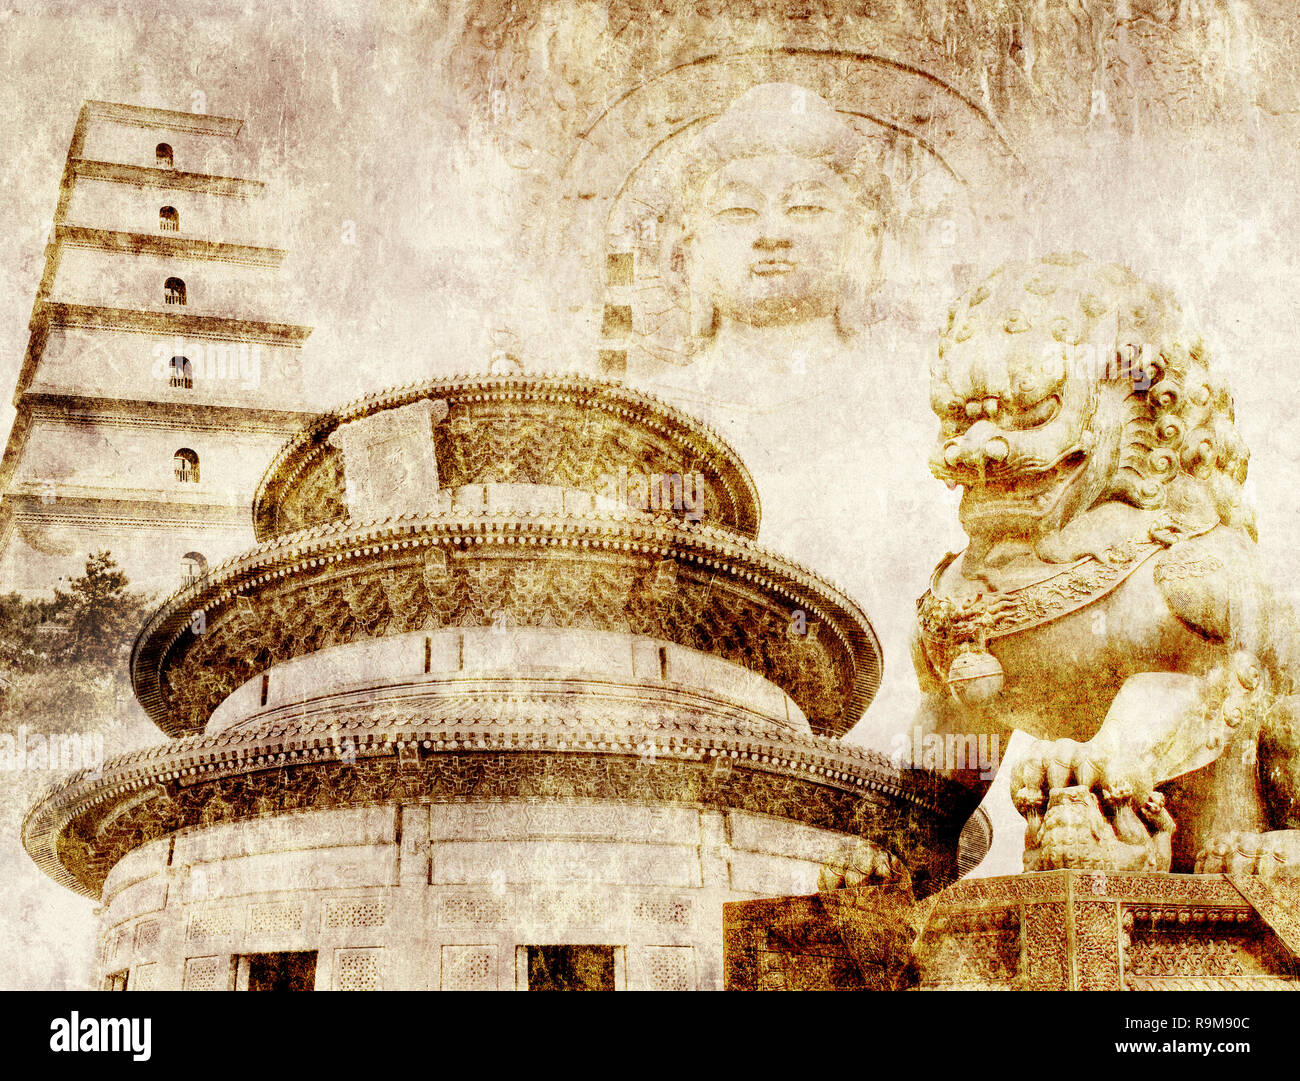 Grunge background avec texture du papier et monuments de Chine - Temple du Ciel à Beijing, la Grande Pagode de l'Oie Sauvage à Xian, lion statue en interdit Cit Banque D'Images